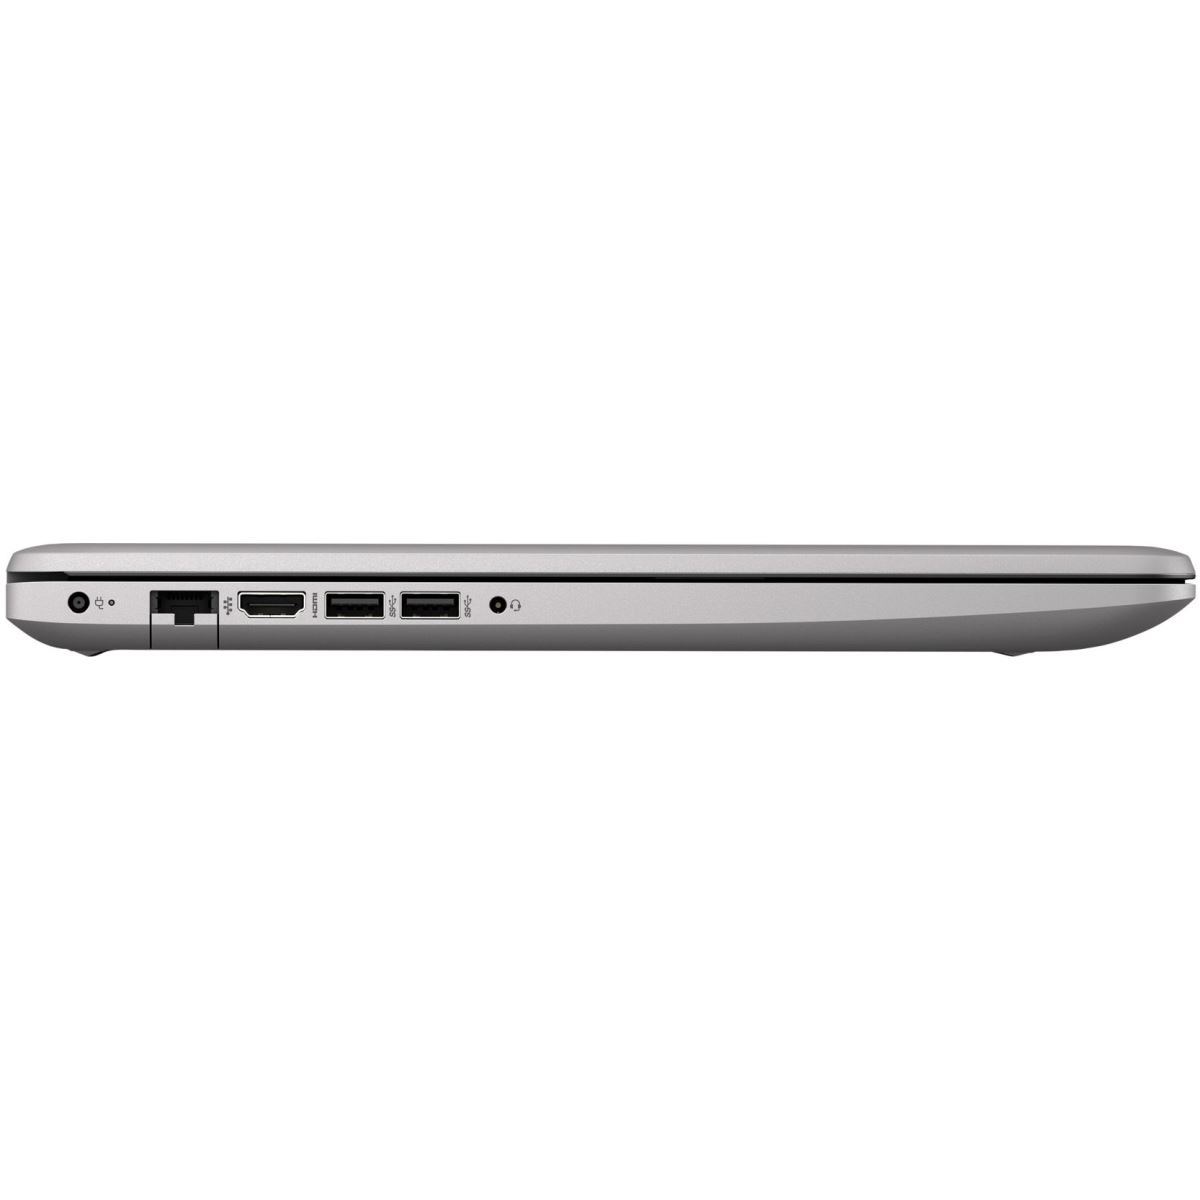 Laptop HP ProBook 470 G7, 17.3" LED FHD Anti-Glare, i5-10210U, AMD Radeon 530 2GB GDDR5, RAM 16GB, SSD 512GB, Windows 10 PRO 64bit